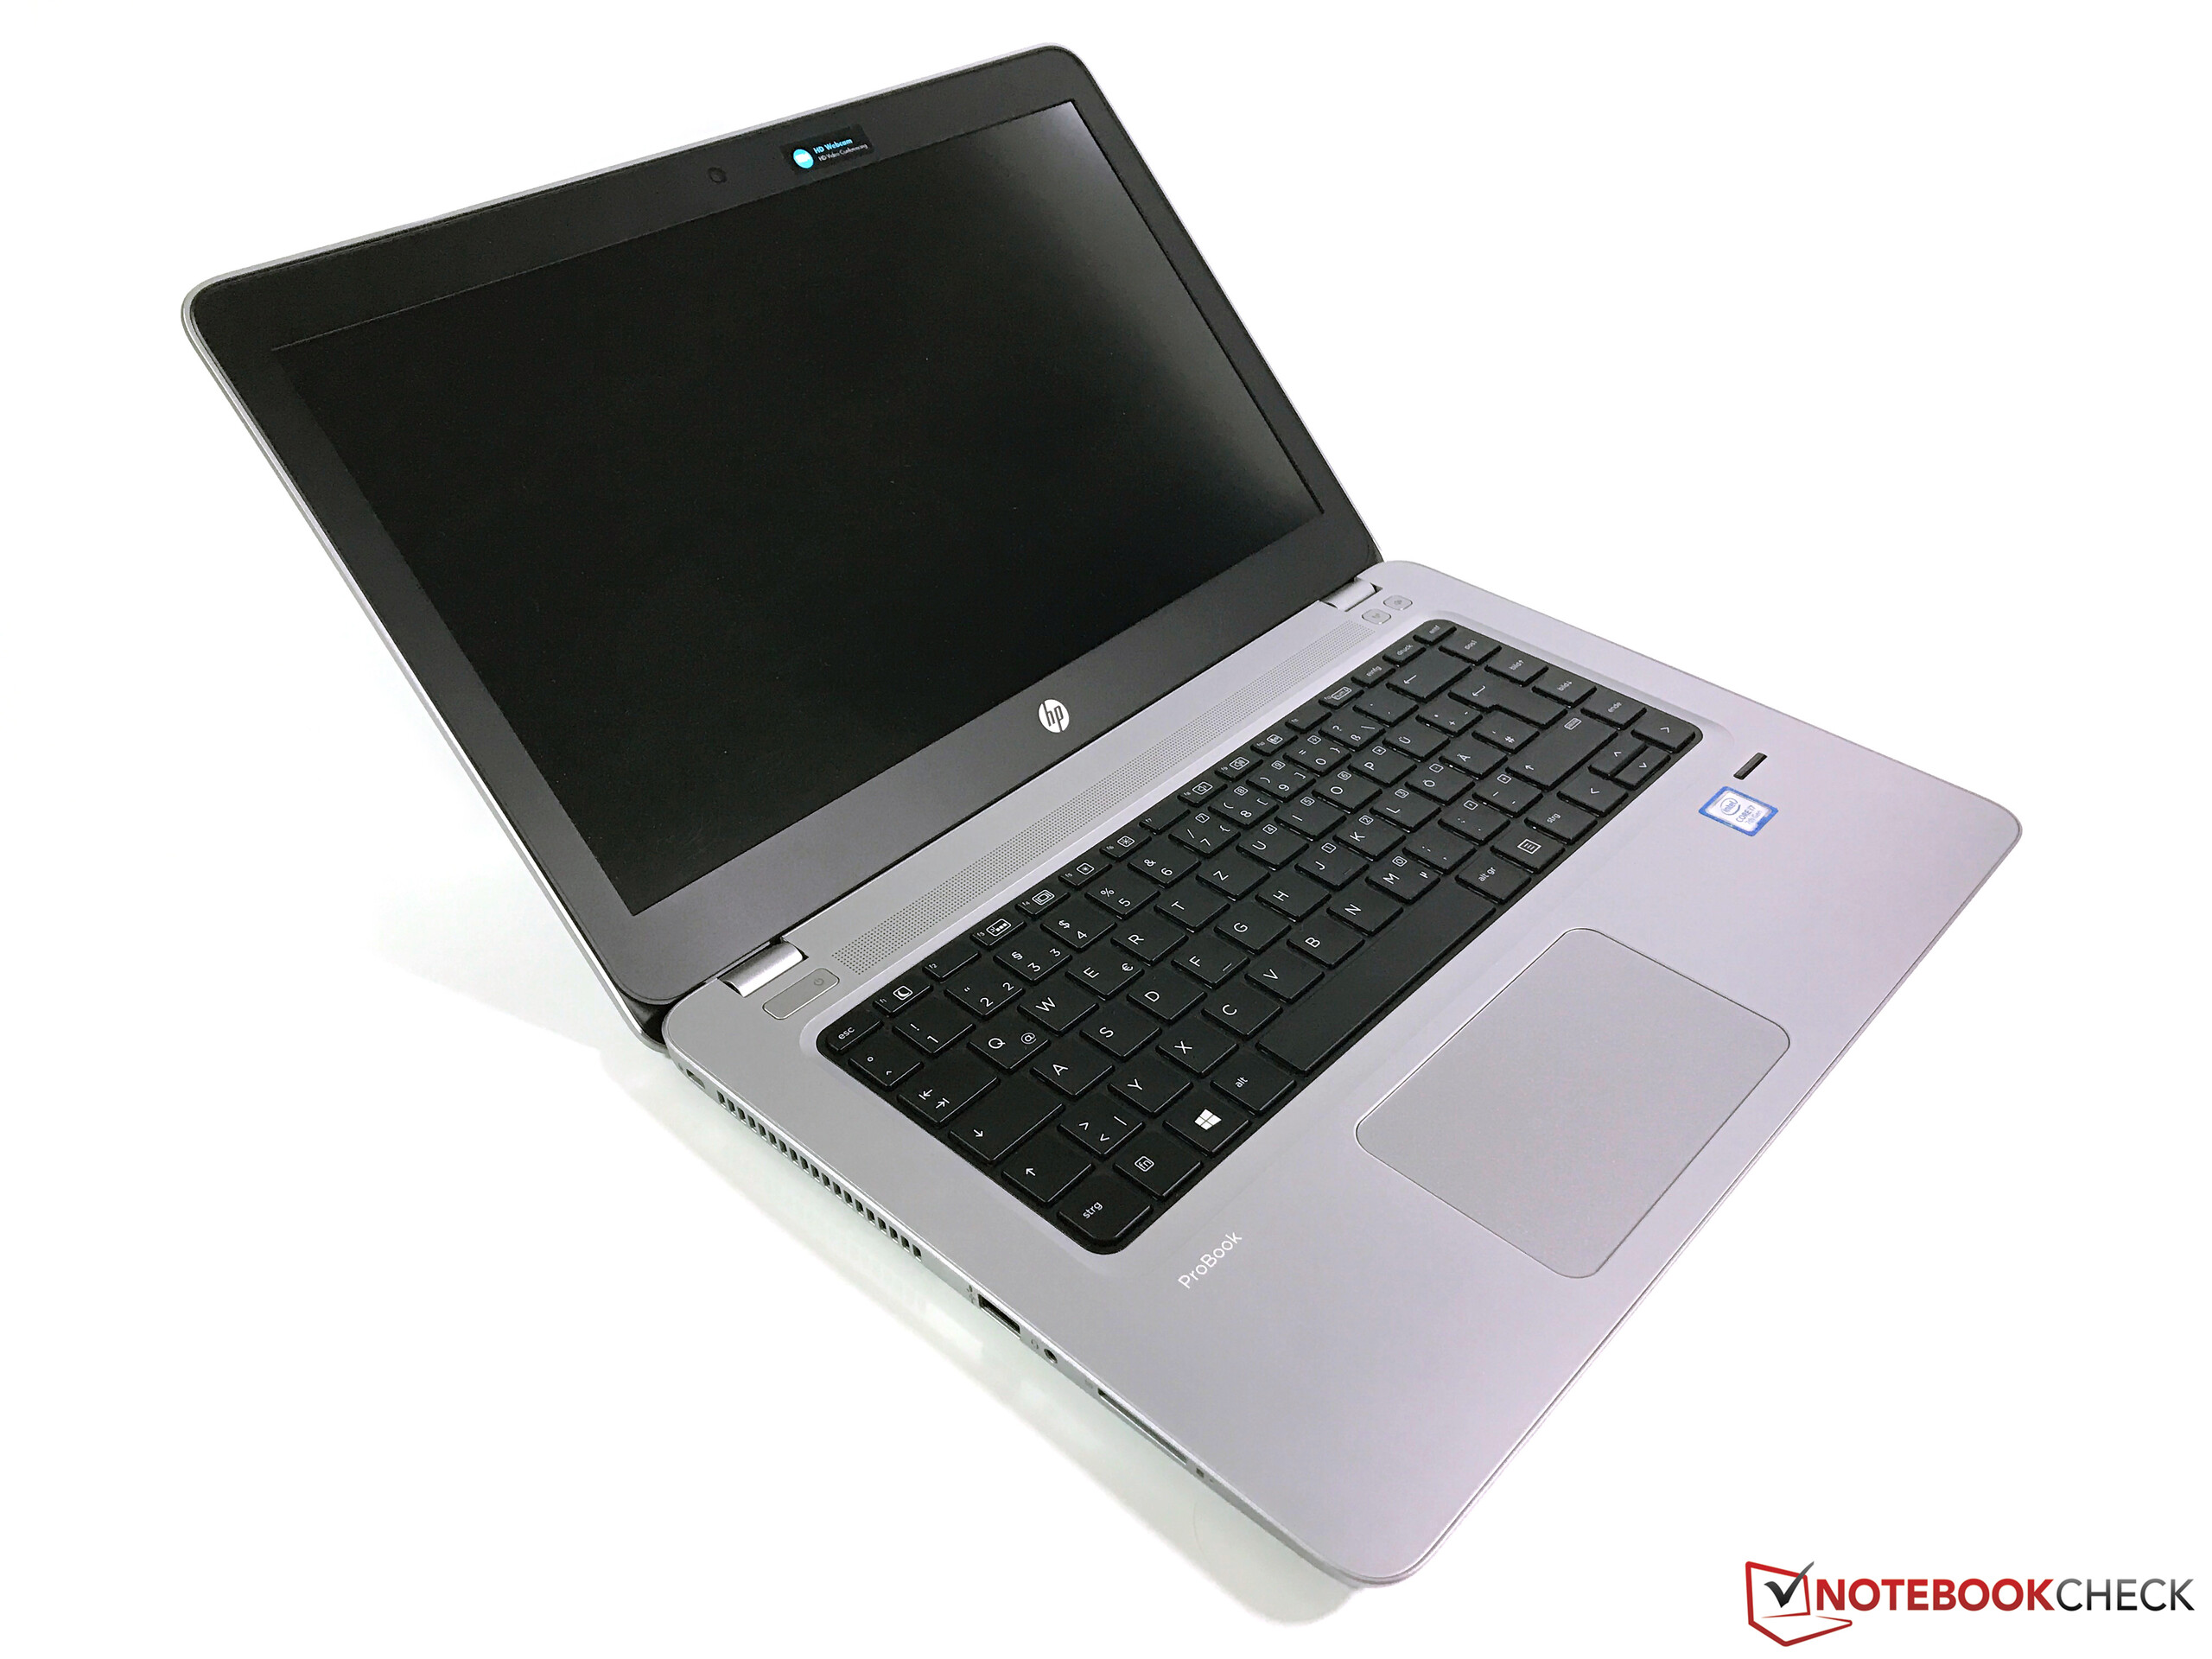 ProBook 440 G4 Notebook PC